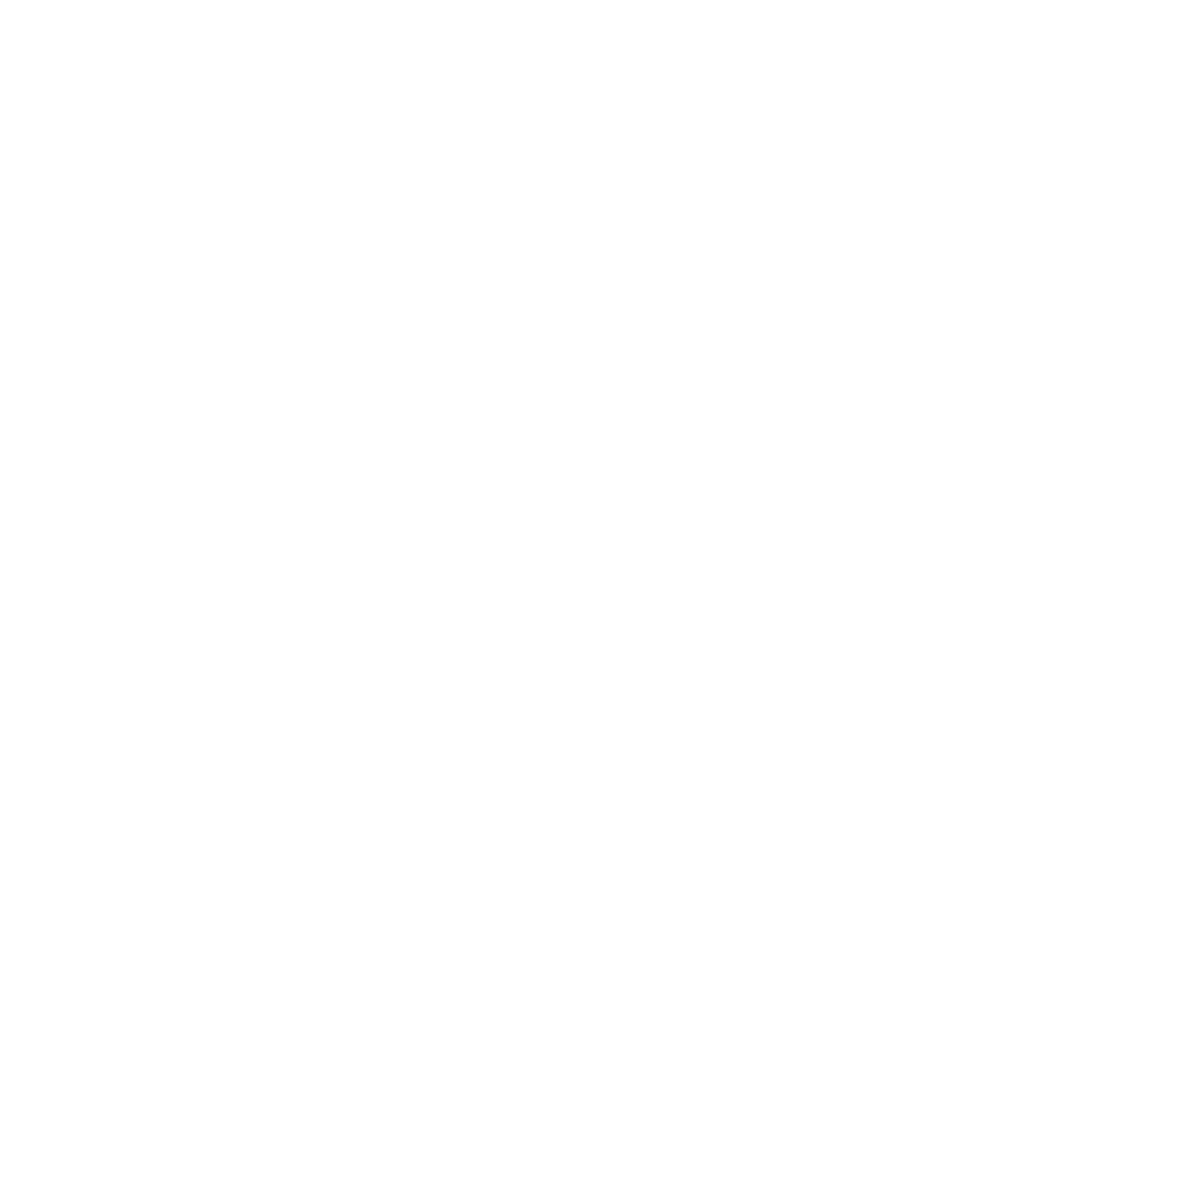 Muskoka Cottage Management - Luxury Cottage Vacation Rental Management 